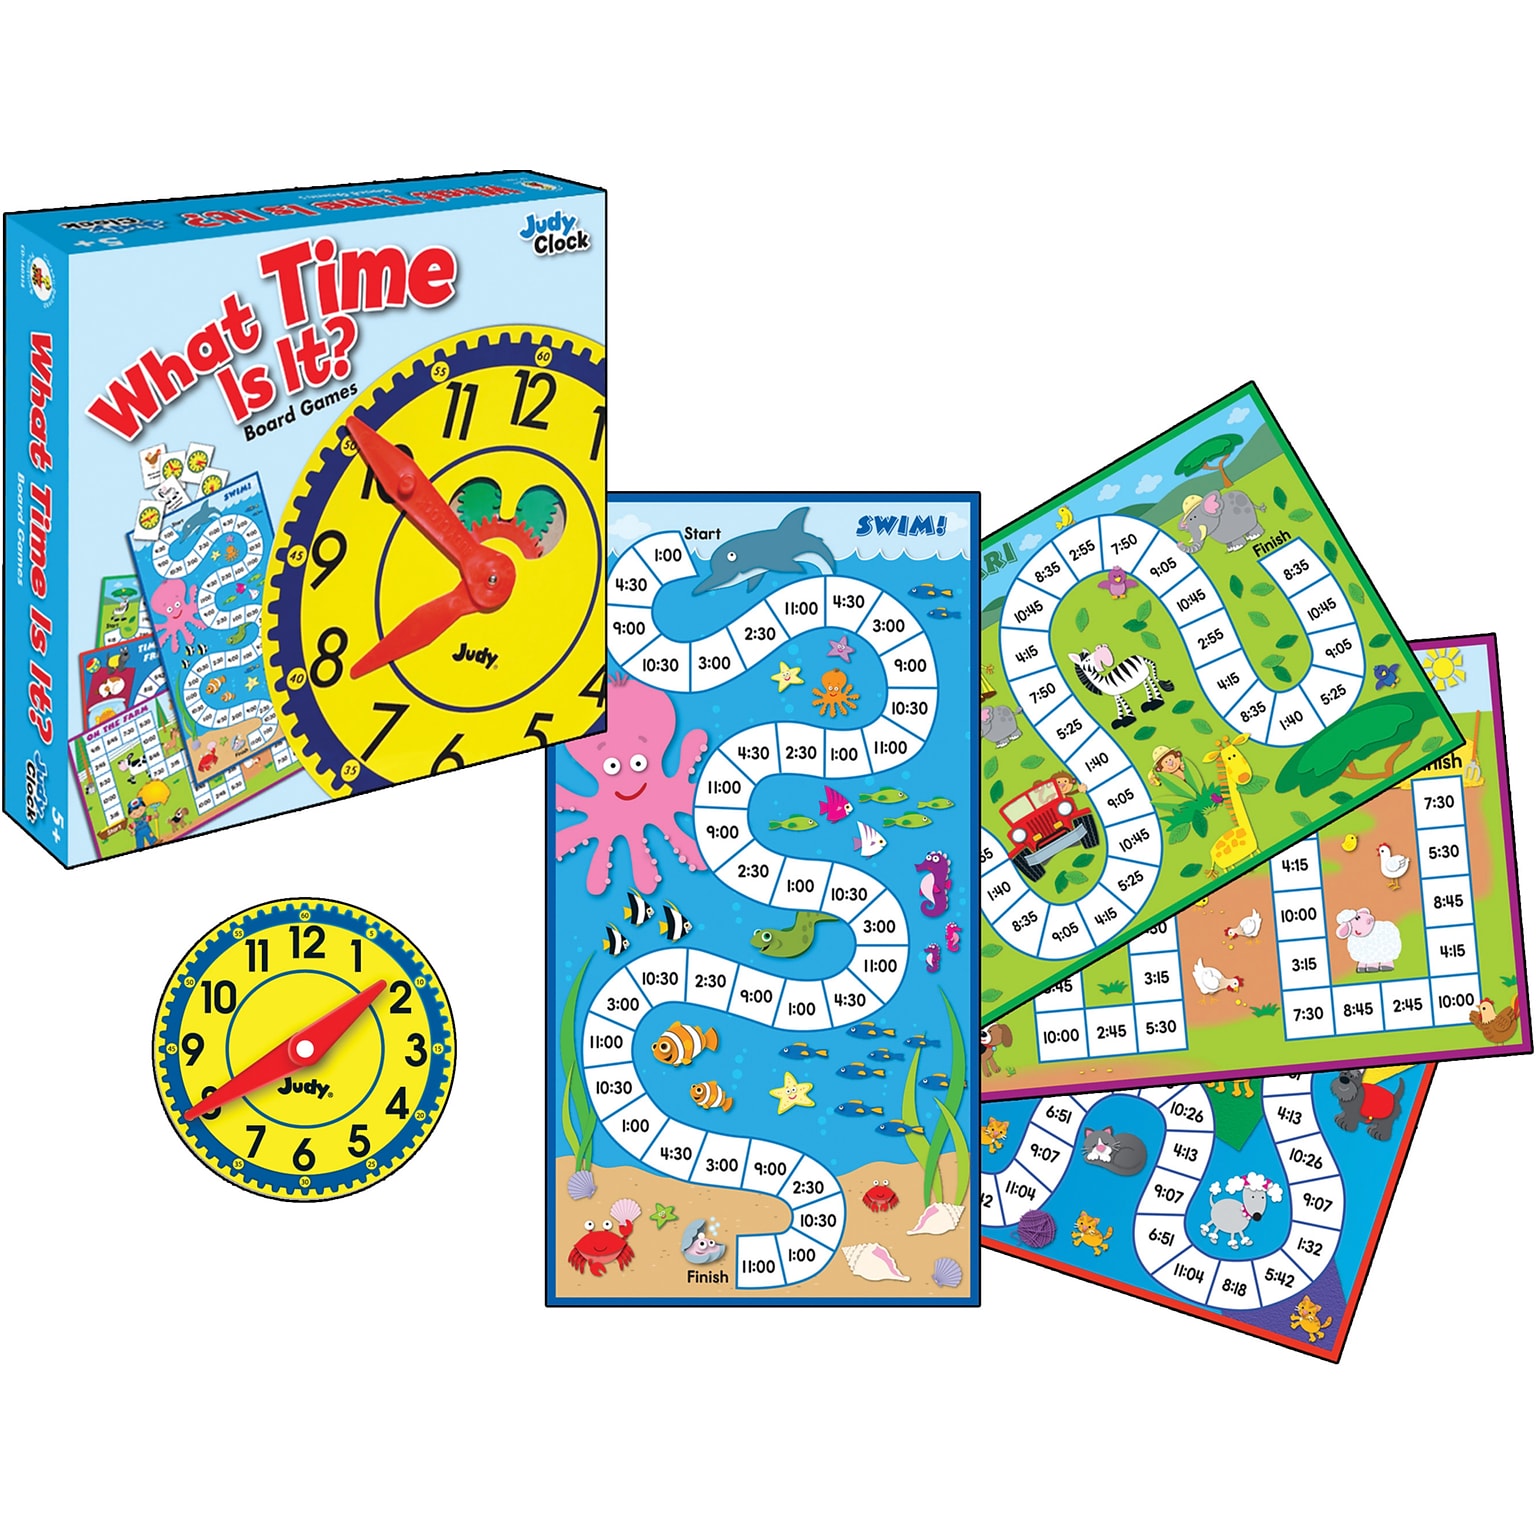 Carson-Dellosa What Time Is It? Board Game, Grades K-3